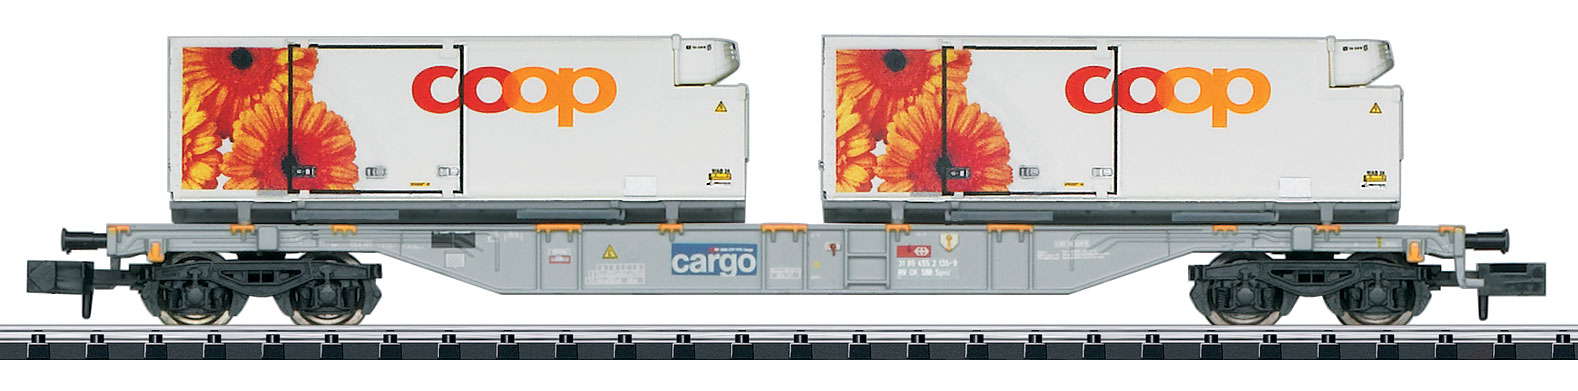 N Minitrix 15491 SBB Cargo Containertragwagen Sgns Coop-Kuehlcontainer_Maerklin_1 21